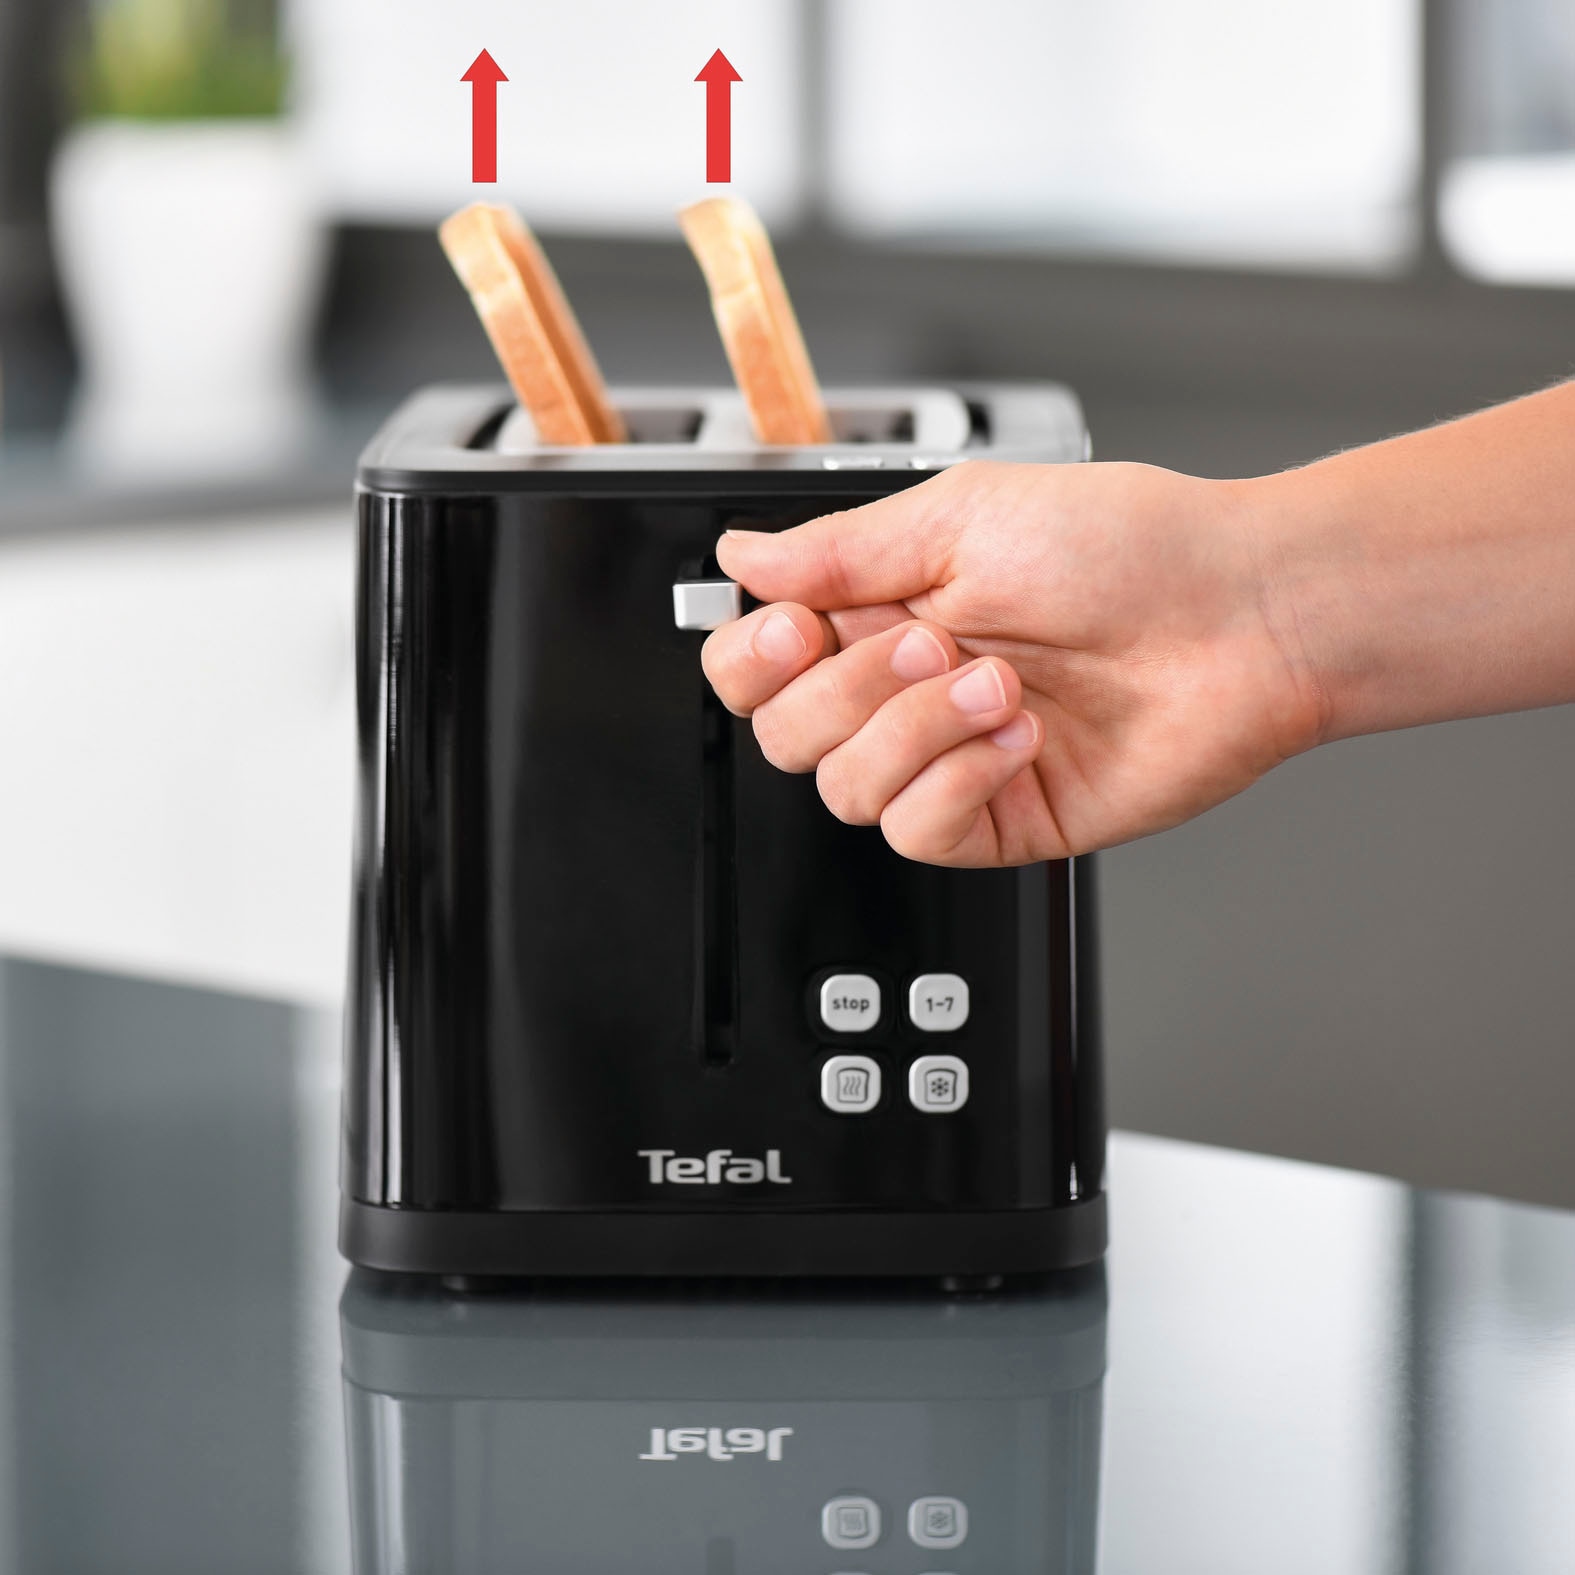 Krups Toaster »KH6418 Smart'n Light«, 2 kurze Schlitze, 800 W, Digitaldisplay, 7 Bräunungsstufen, automatische Zentrierung des Brots